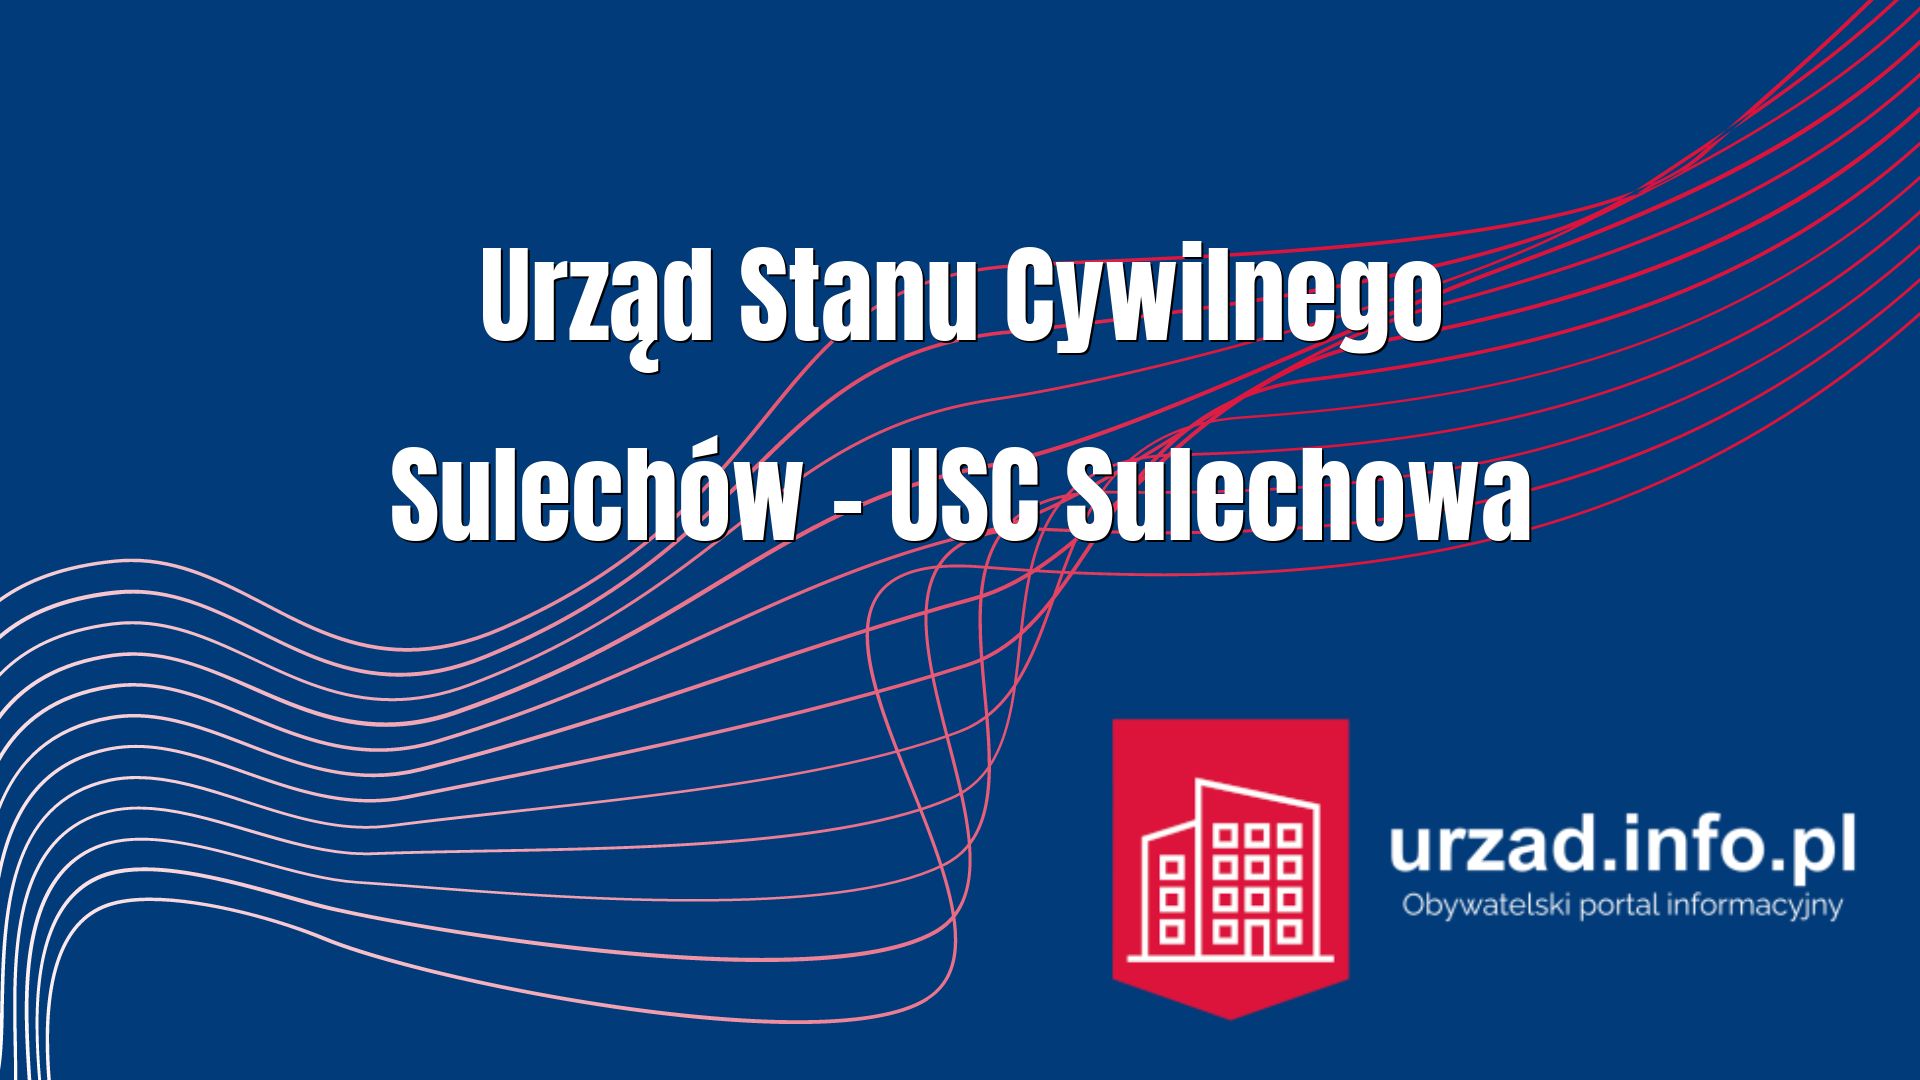 Urząd Stanu Cywilnego Sulechów – USC Sulechowa